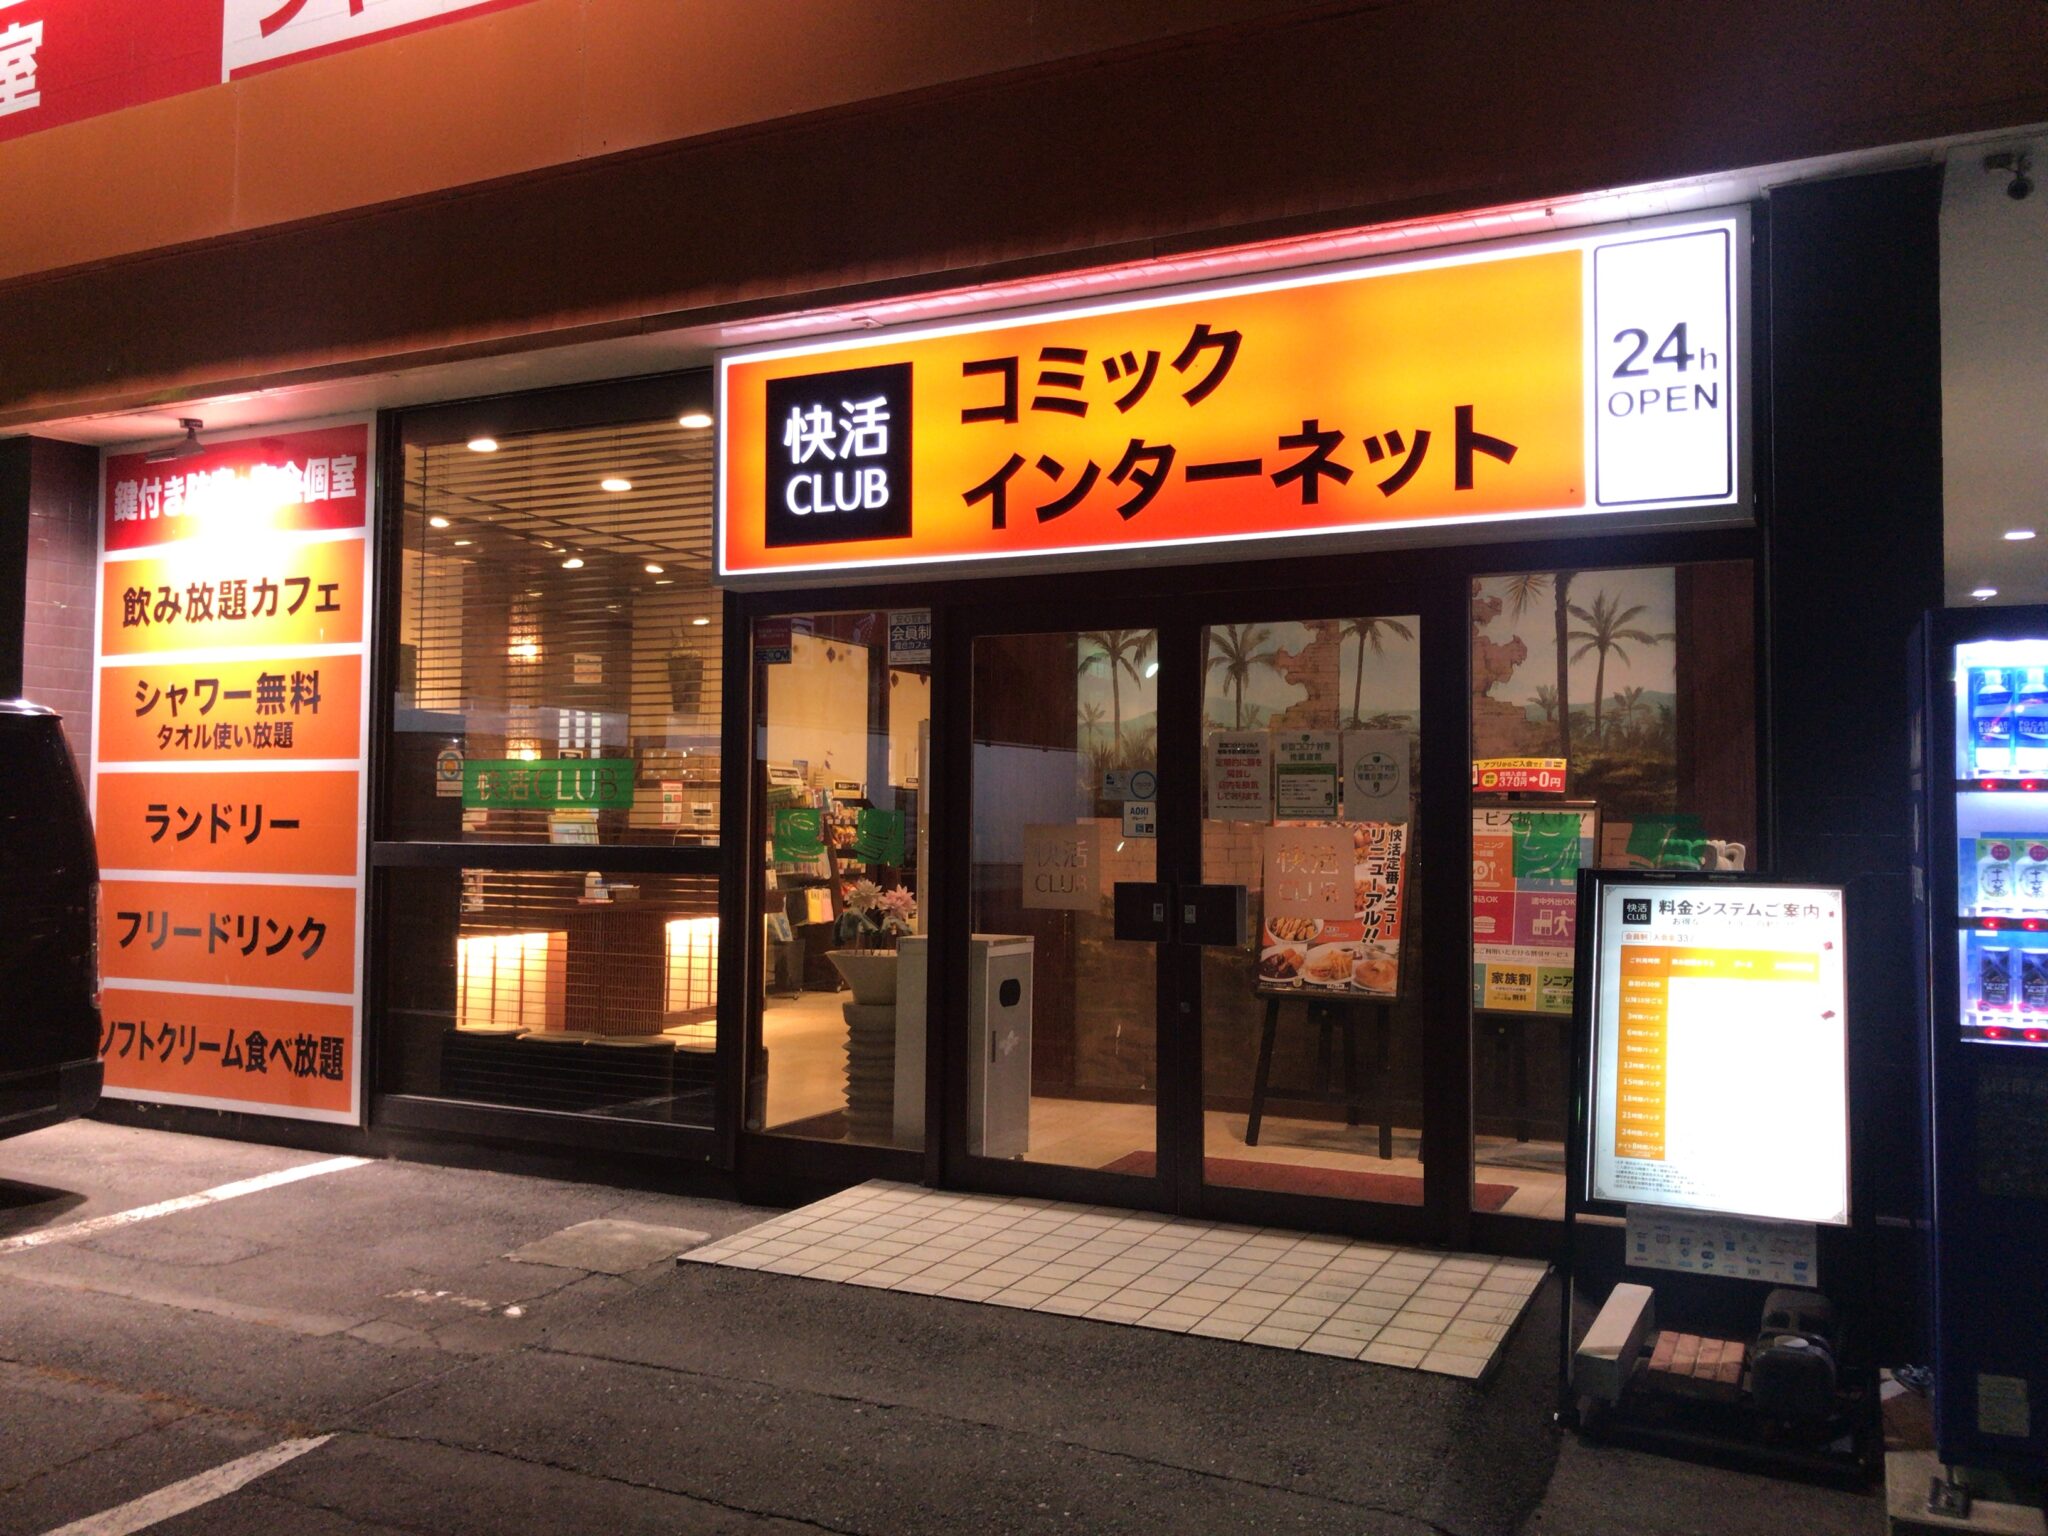 上田駅から車で9分 快活club 上田バイパス店をレポート ヒマップ